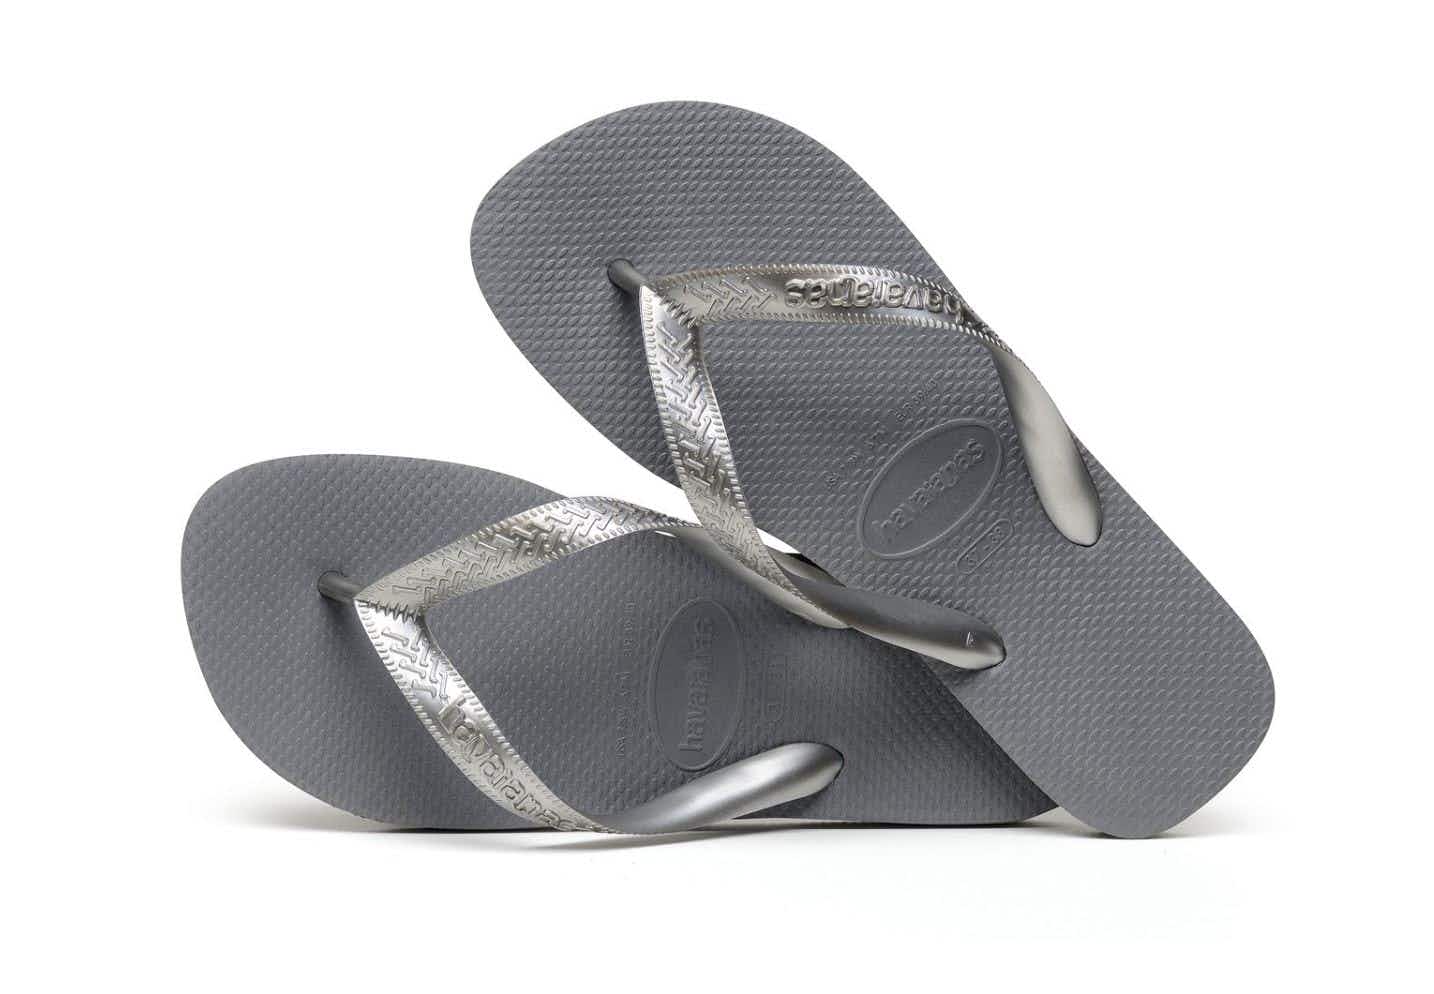 A pair of Havaianas flip flops in steel grey,